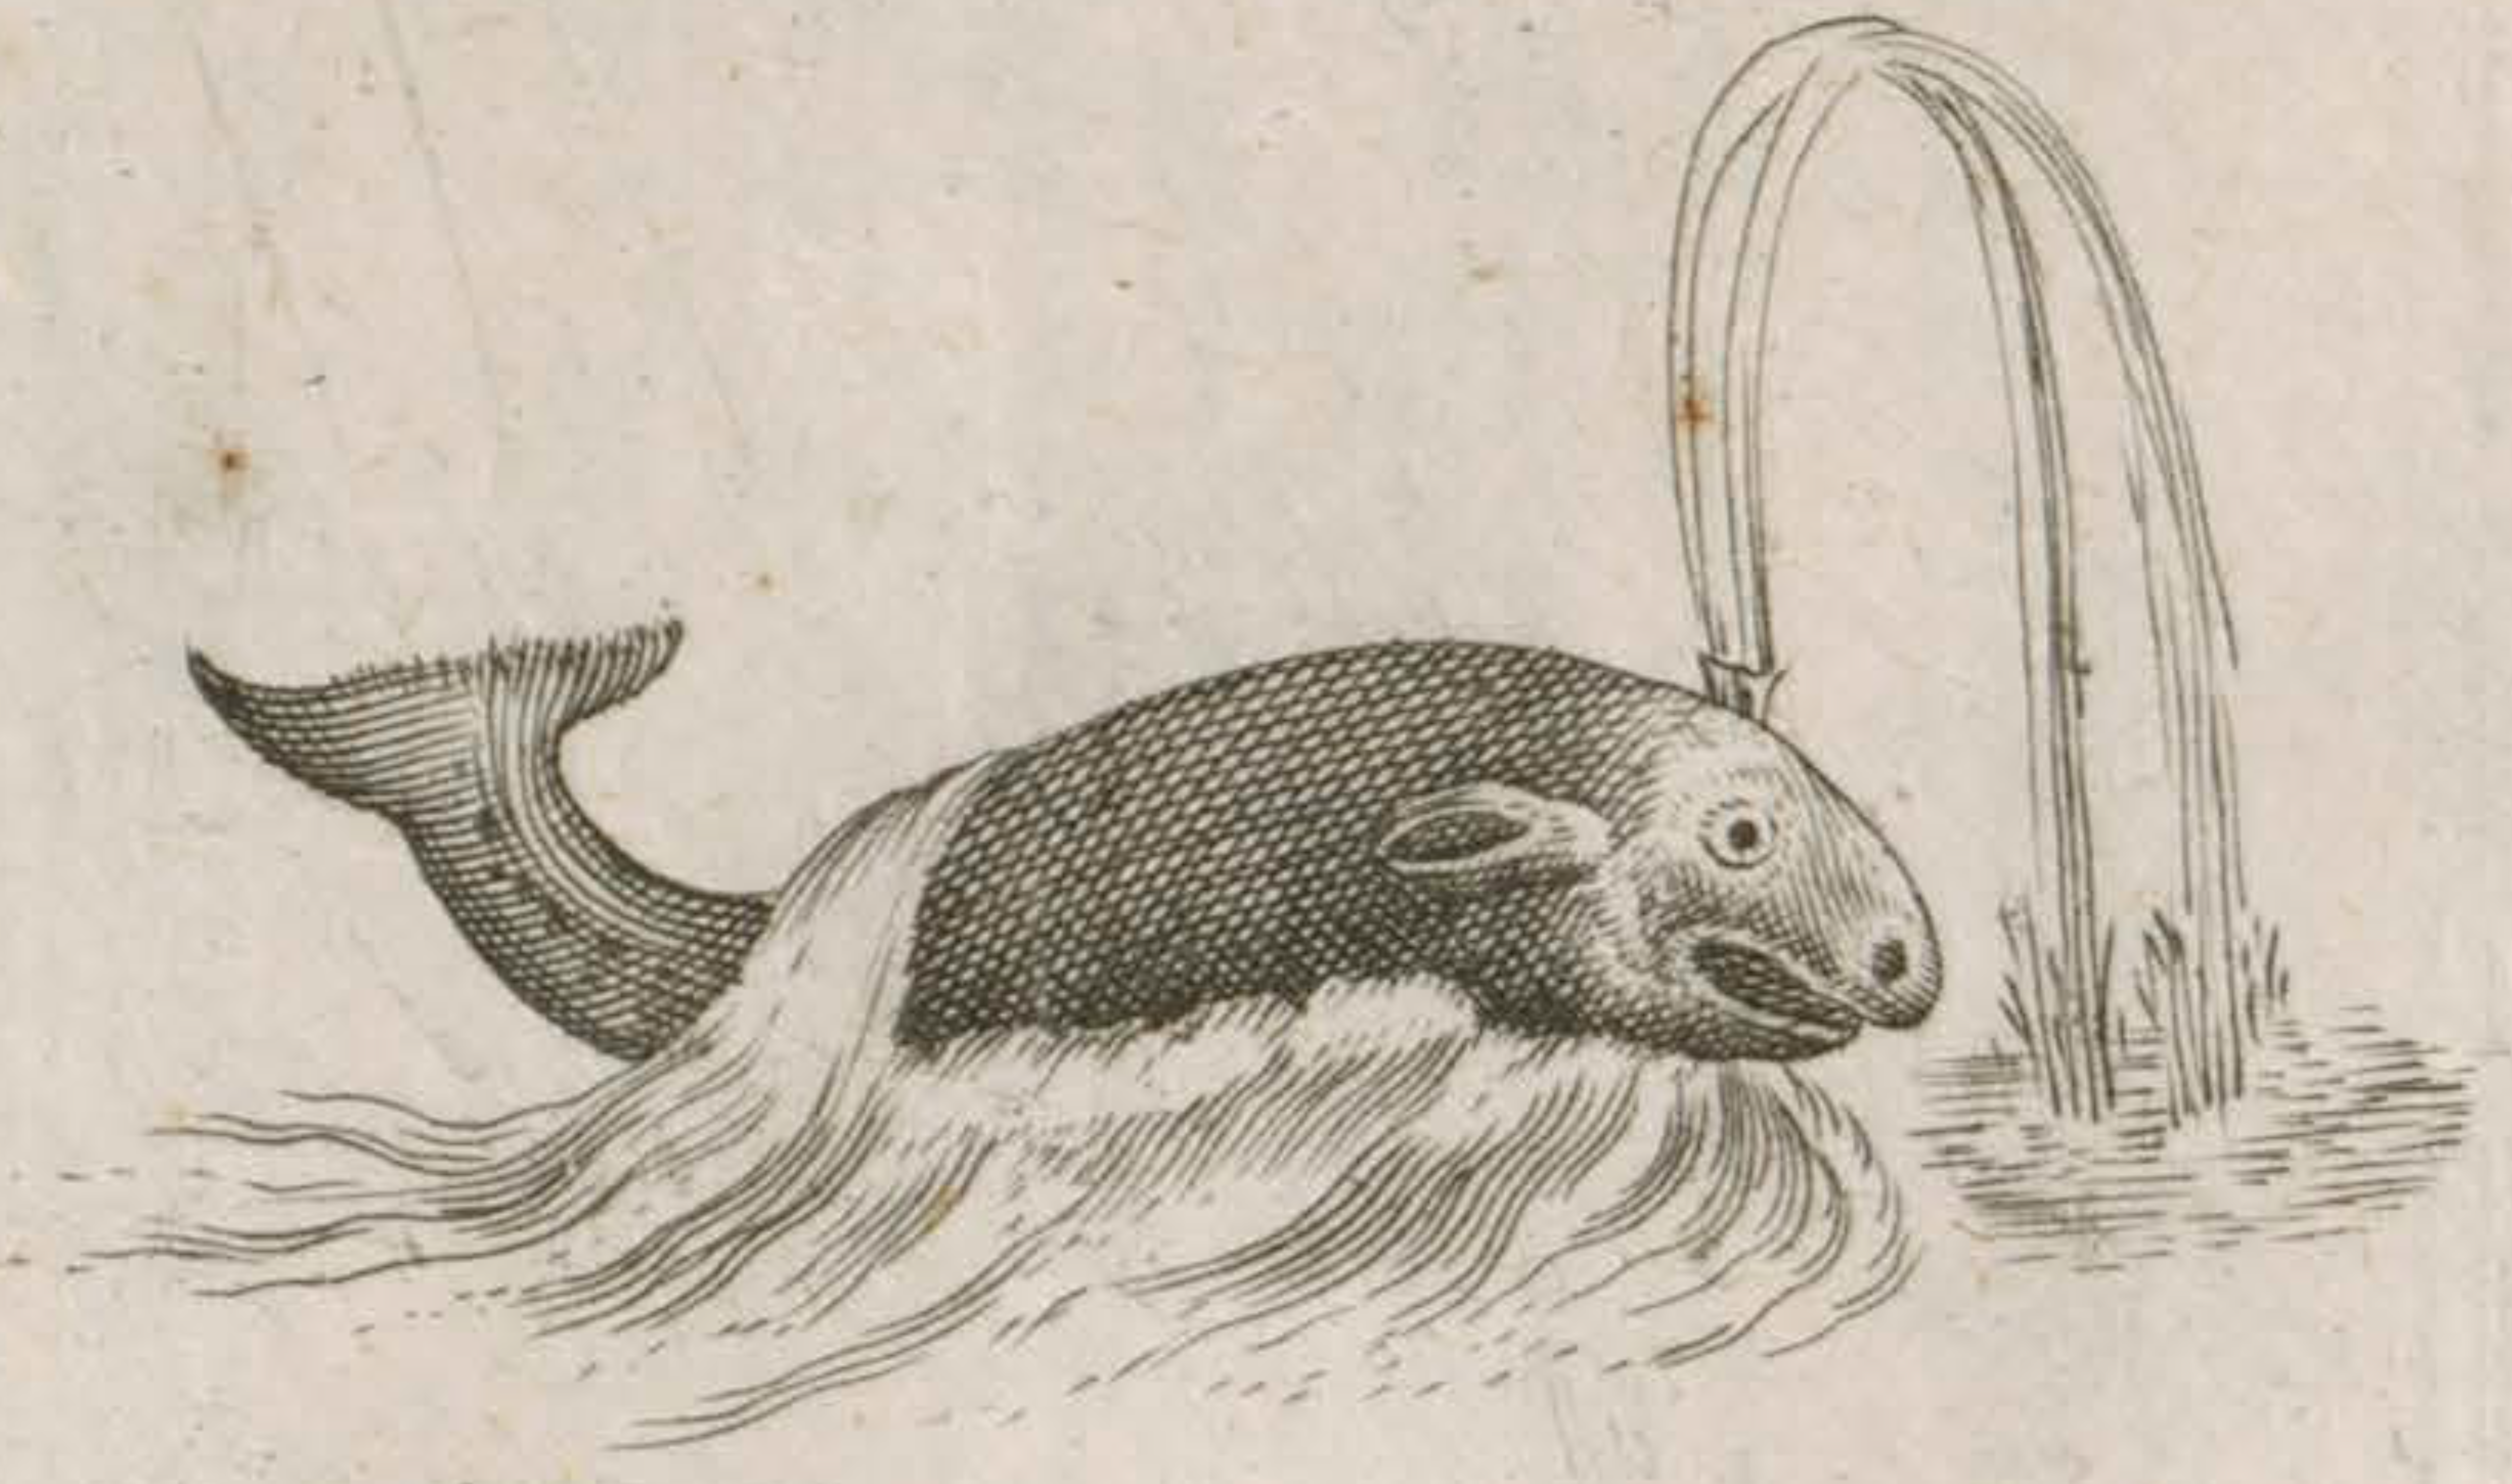 Détail de carte dessinée par Samuel de Champlain montrant une baleine